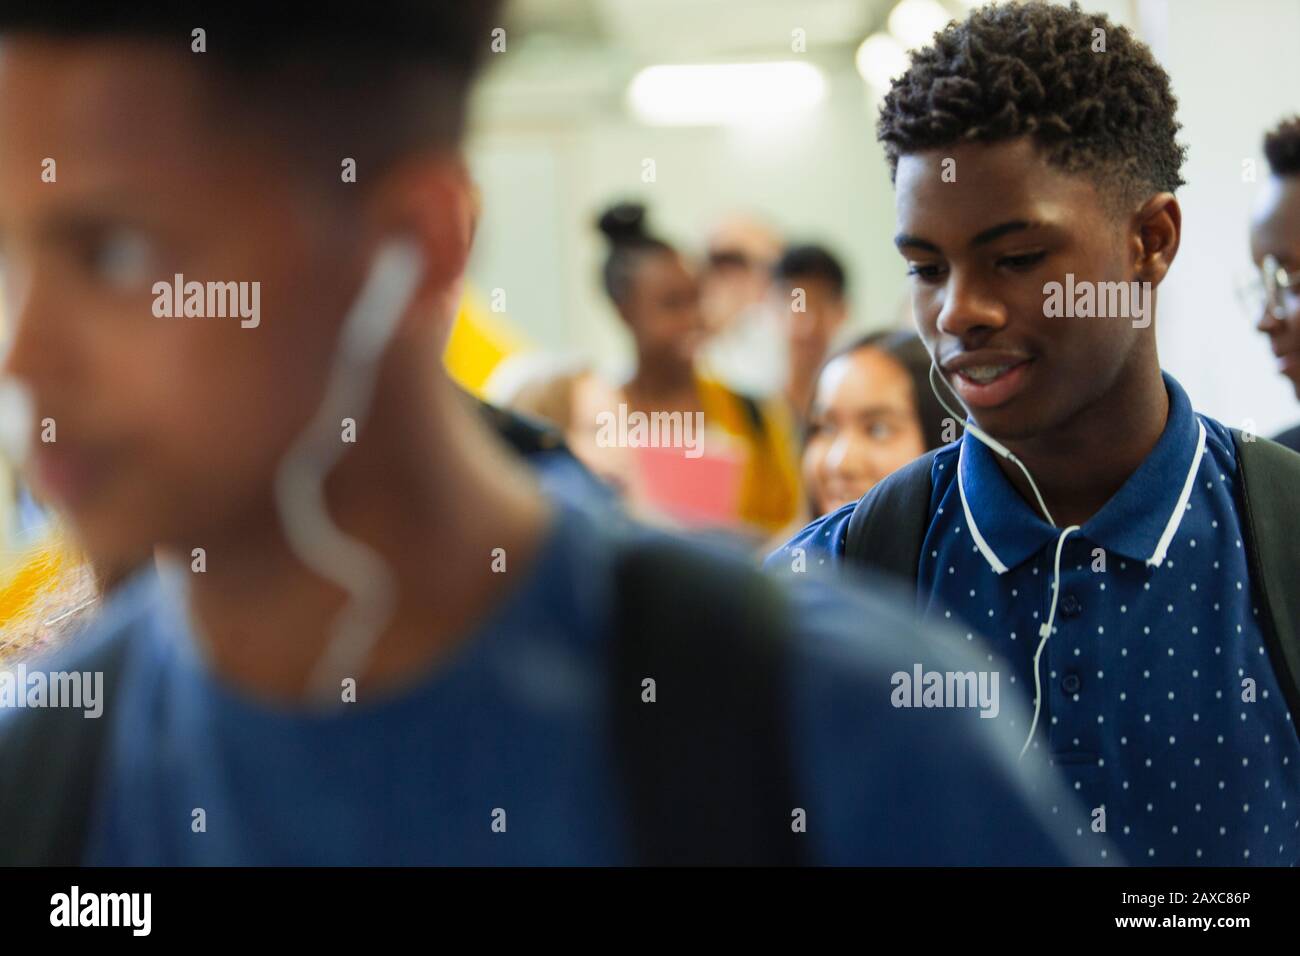 Junior high boy student with headphones in corridor Stock Photo